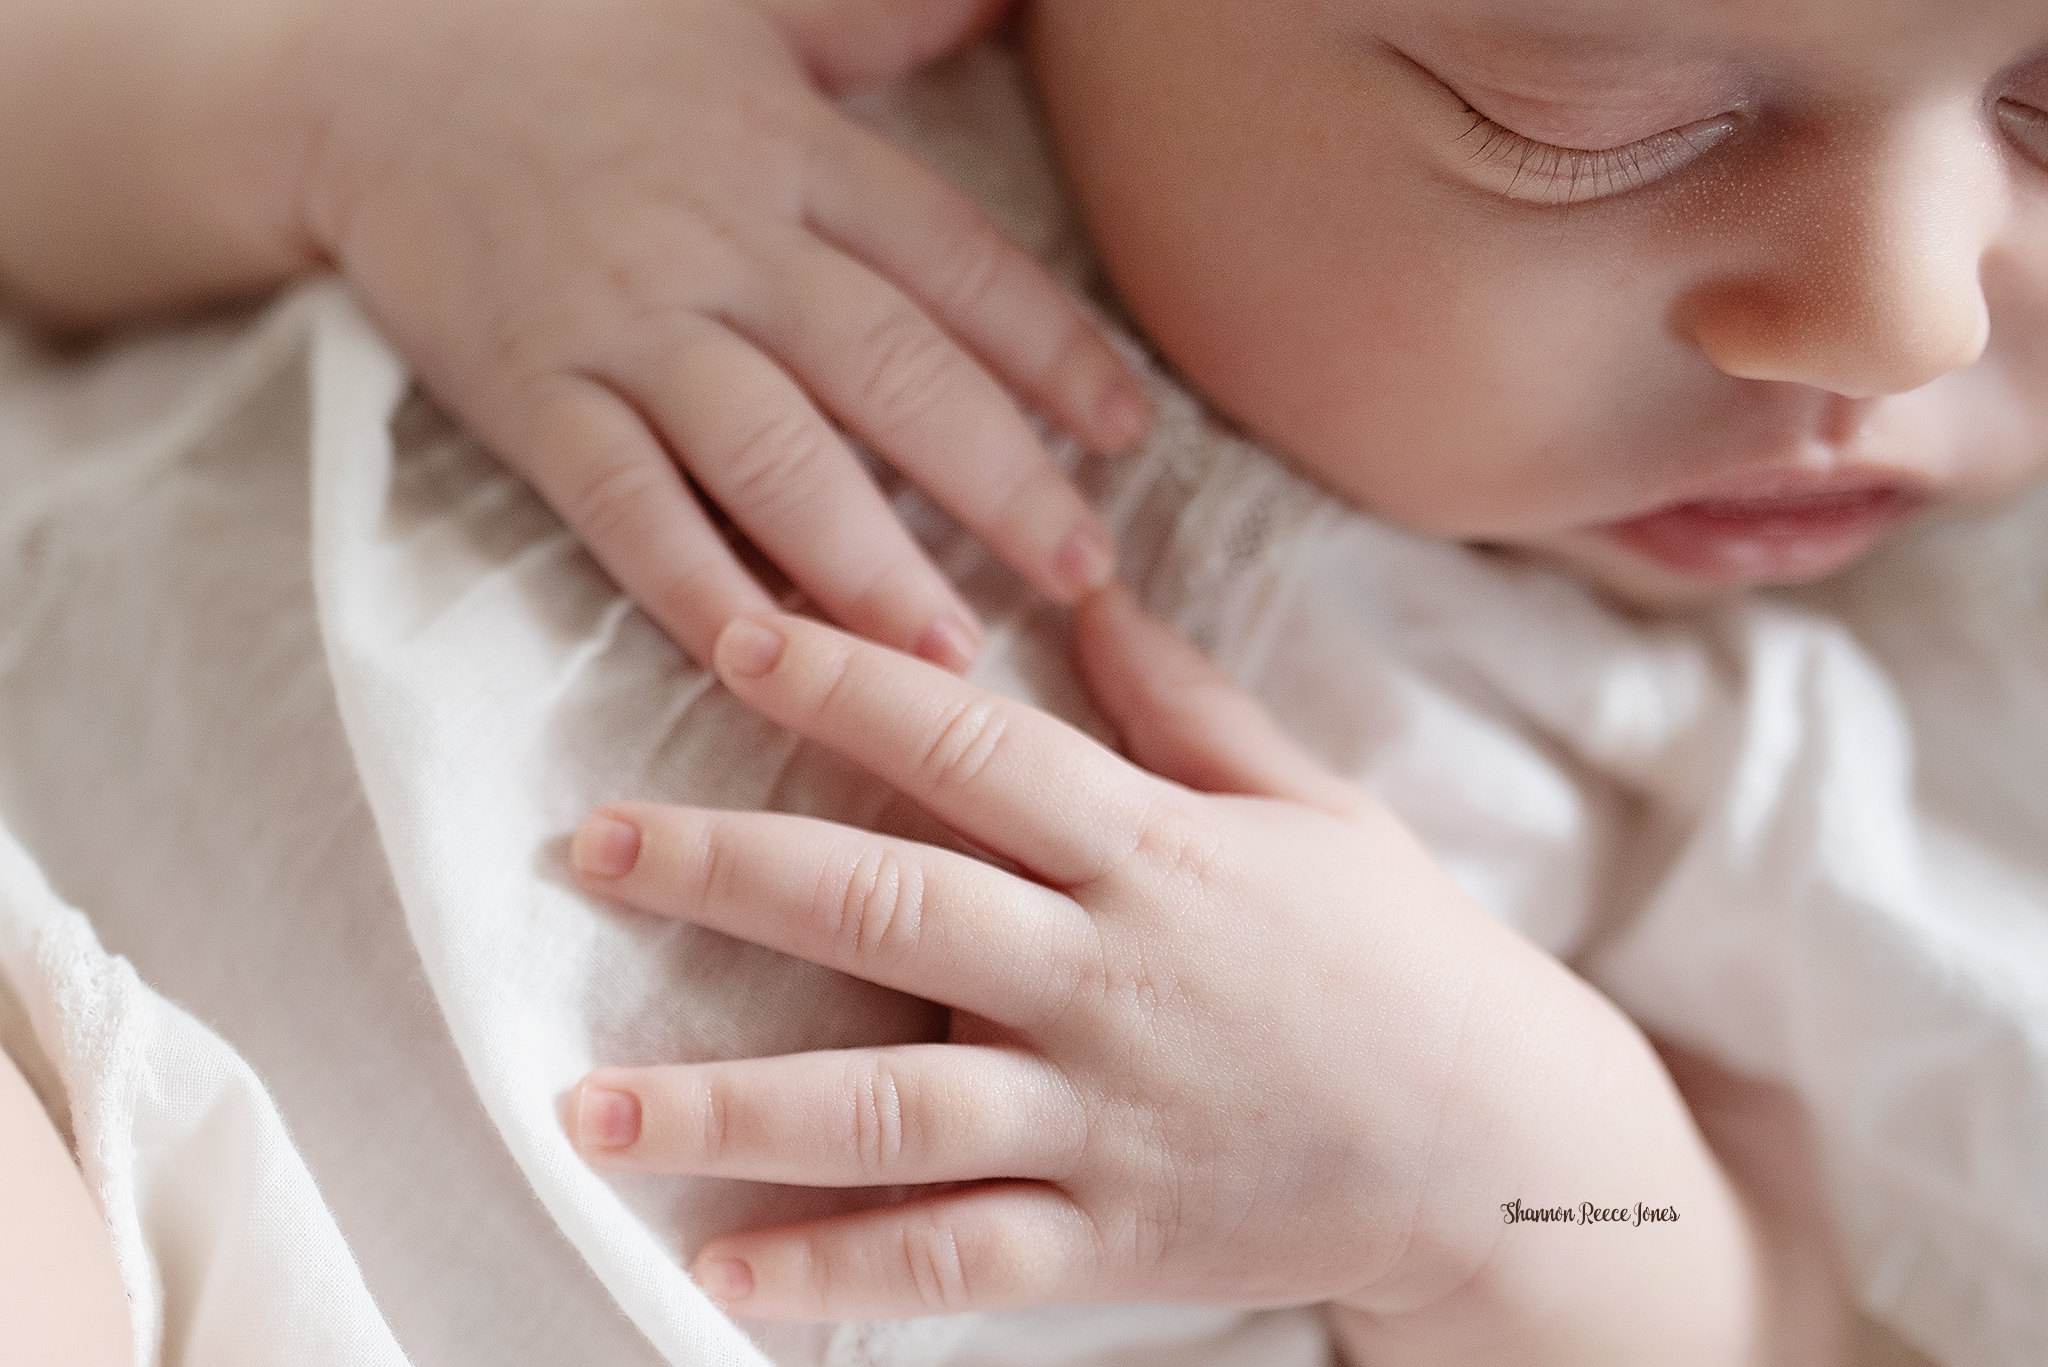 newborn photos - baby hands